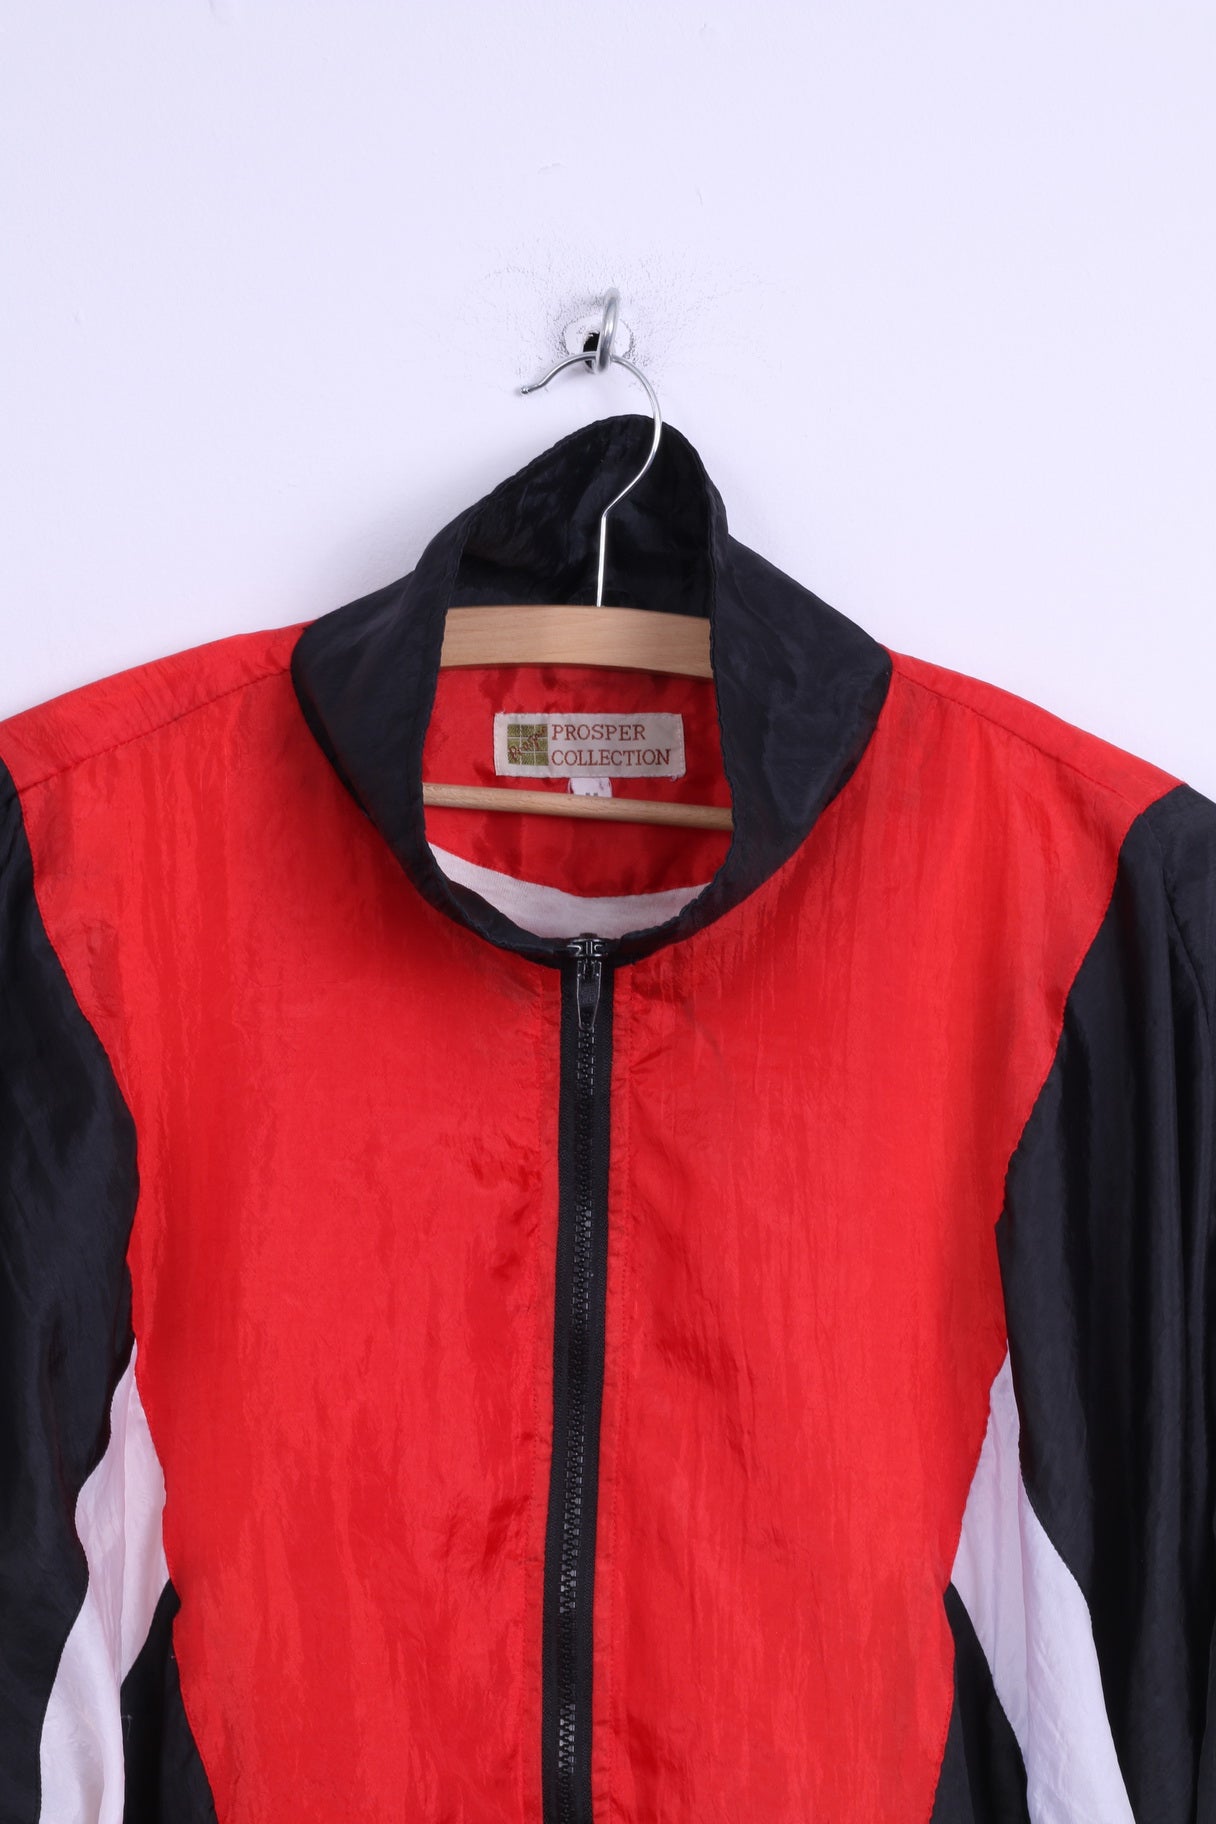 Giacca da uomo M della collezione Prosper, abbigliamento sportivo rosso, top leggero vintage